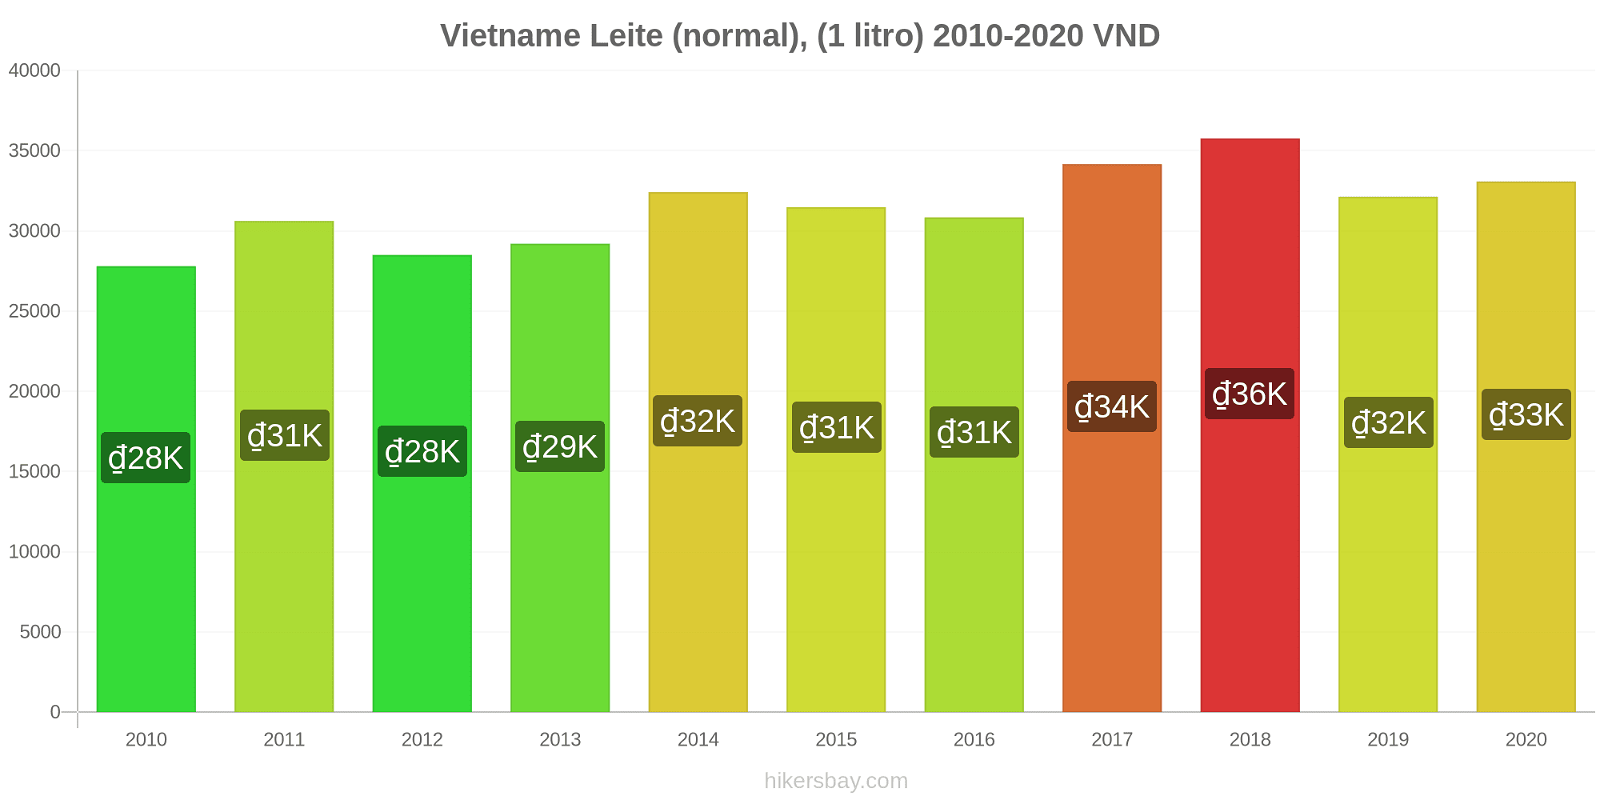 Vietname variação de preço (Regular), leite (1 litro) hikersbay.com